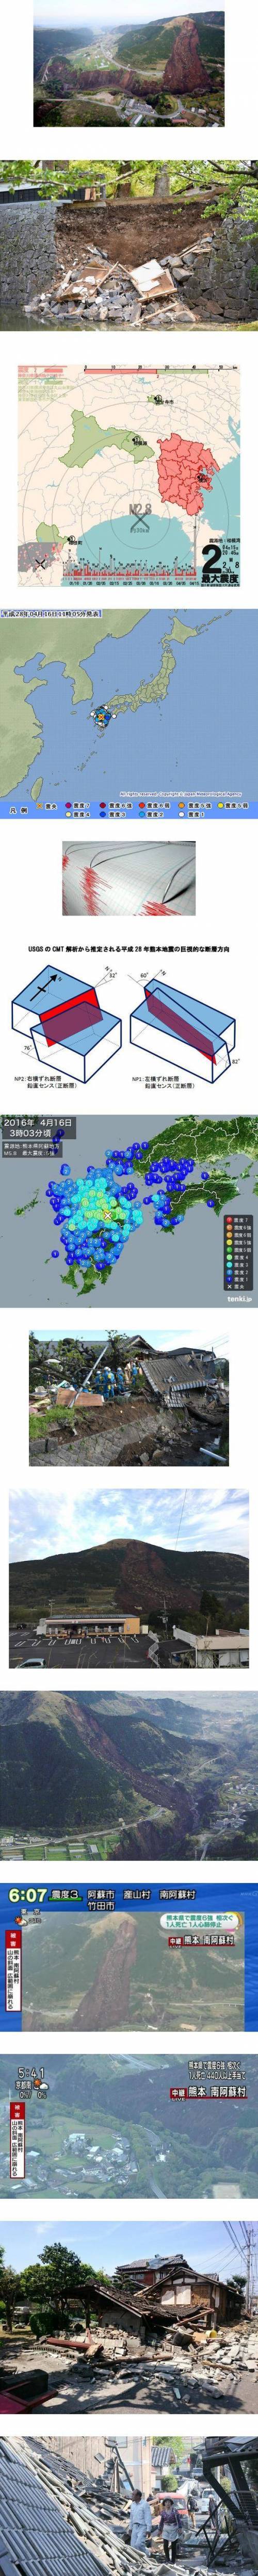 일본 구마모토 지진의 위력. jpg